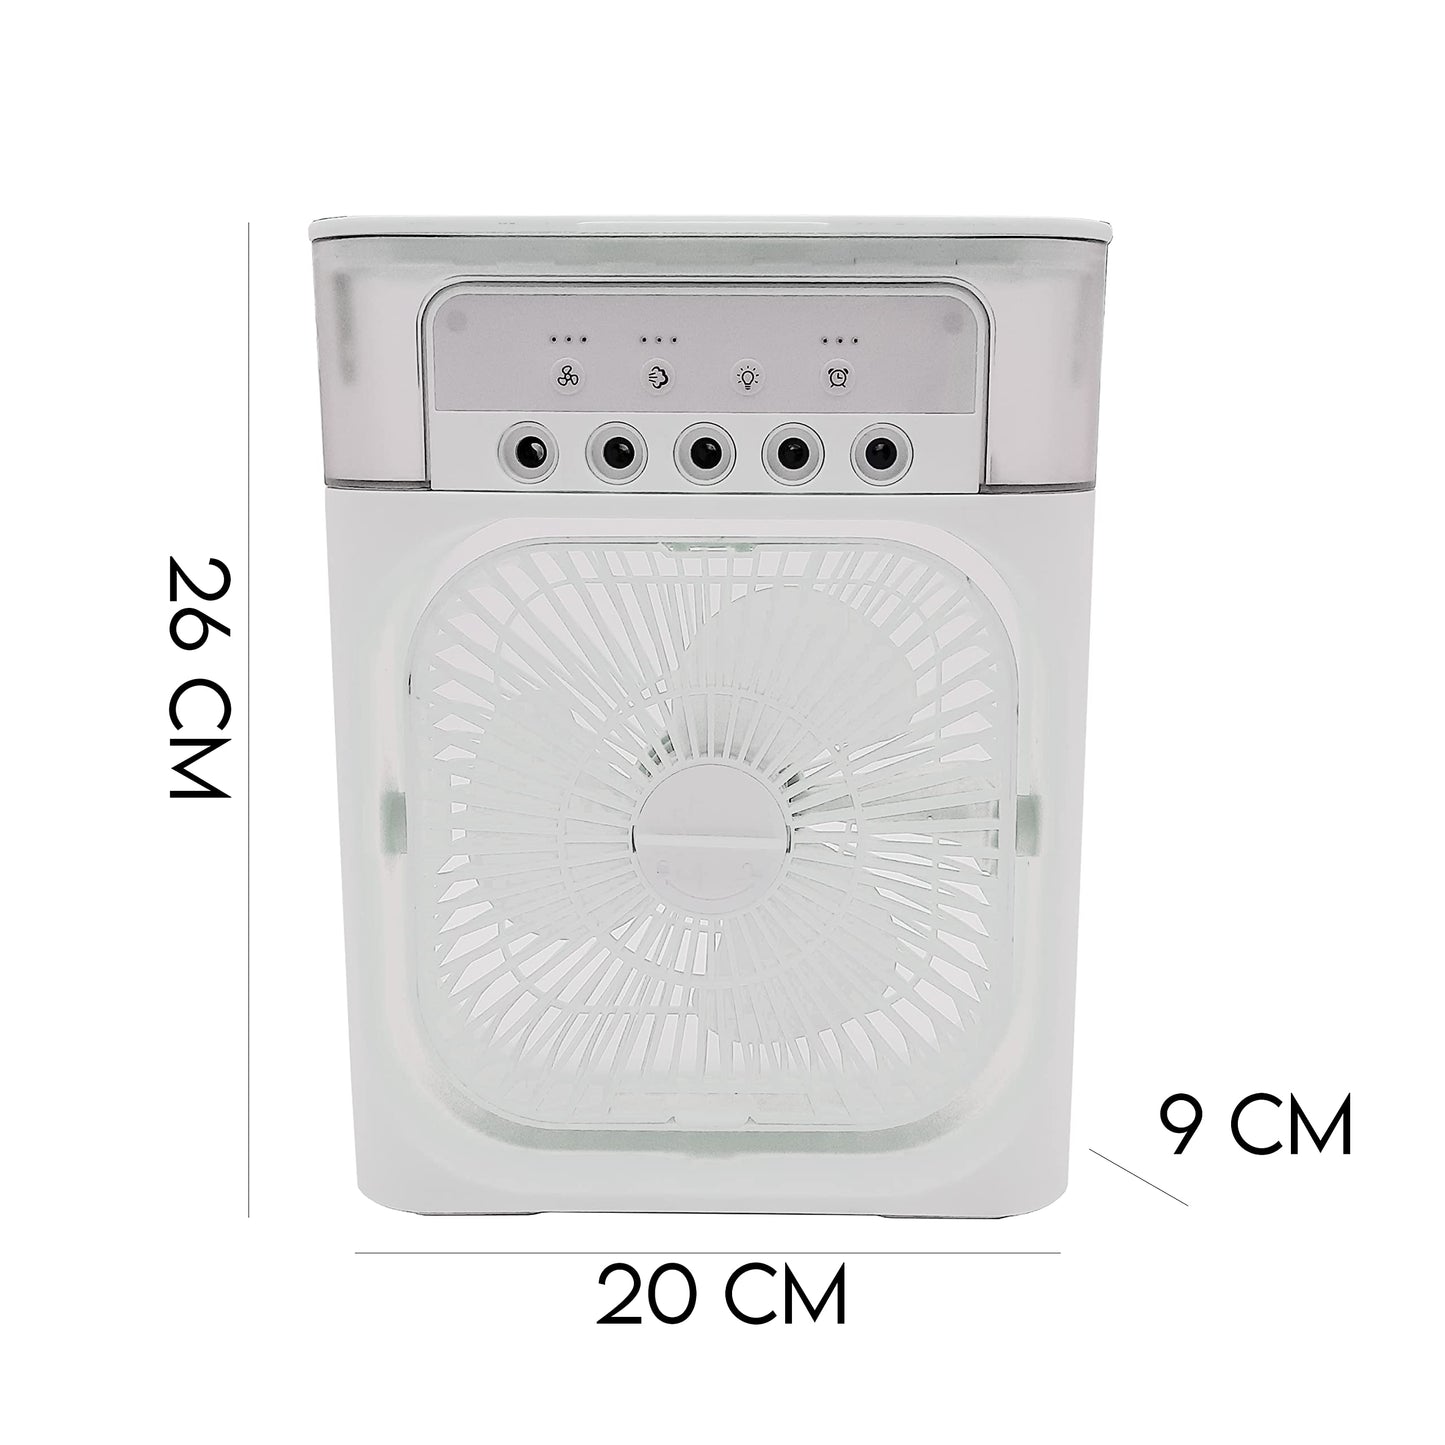 081 Store - Mini Ventilatore Portatile 3 in 1 da Tavolo USB: Raffrescatore, Diffusore di Oli Essenziali, 3 Velocità, Timer e 7 LED RGB